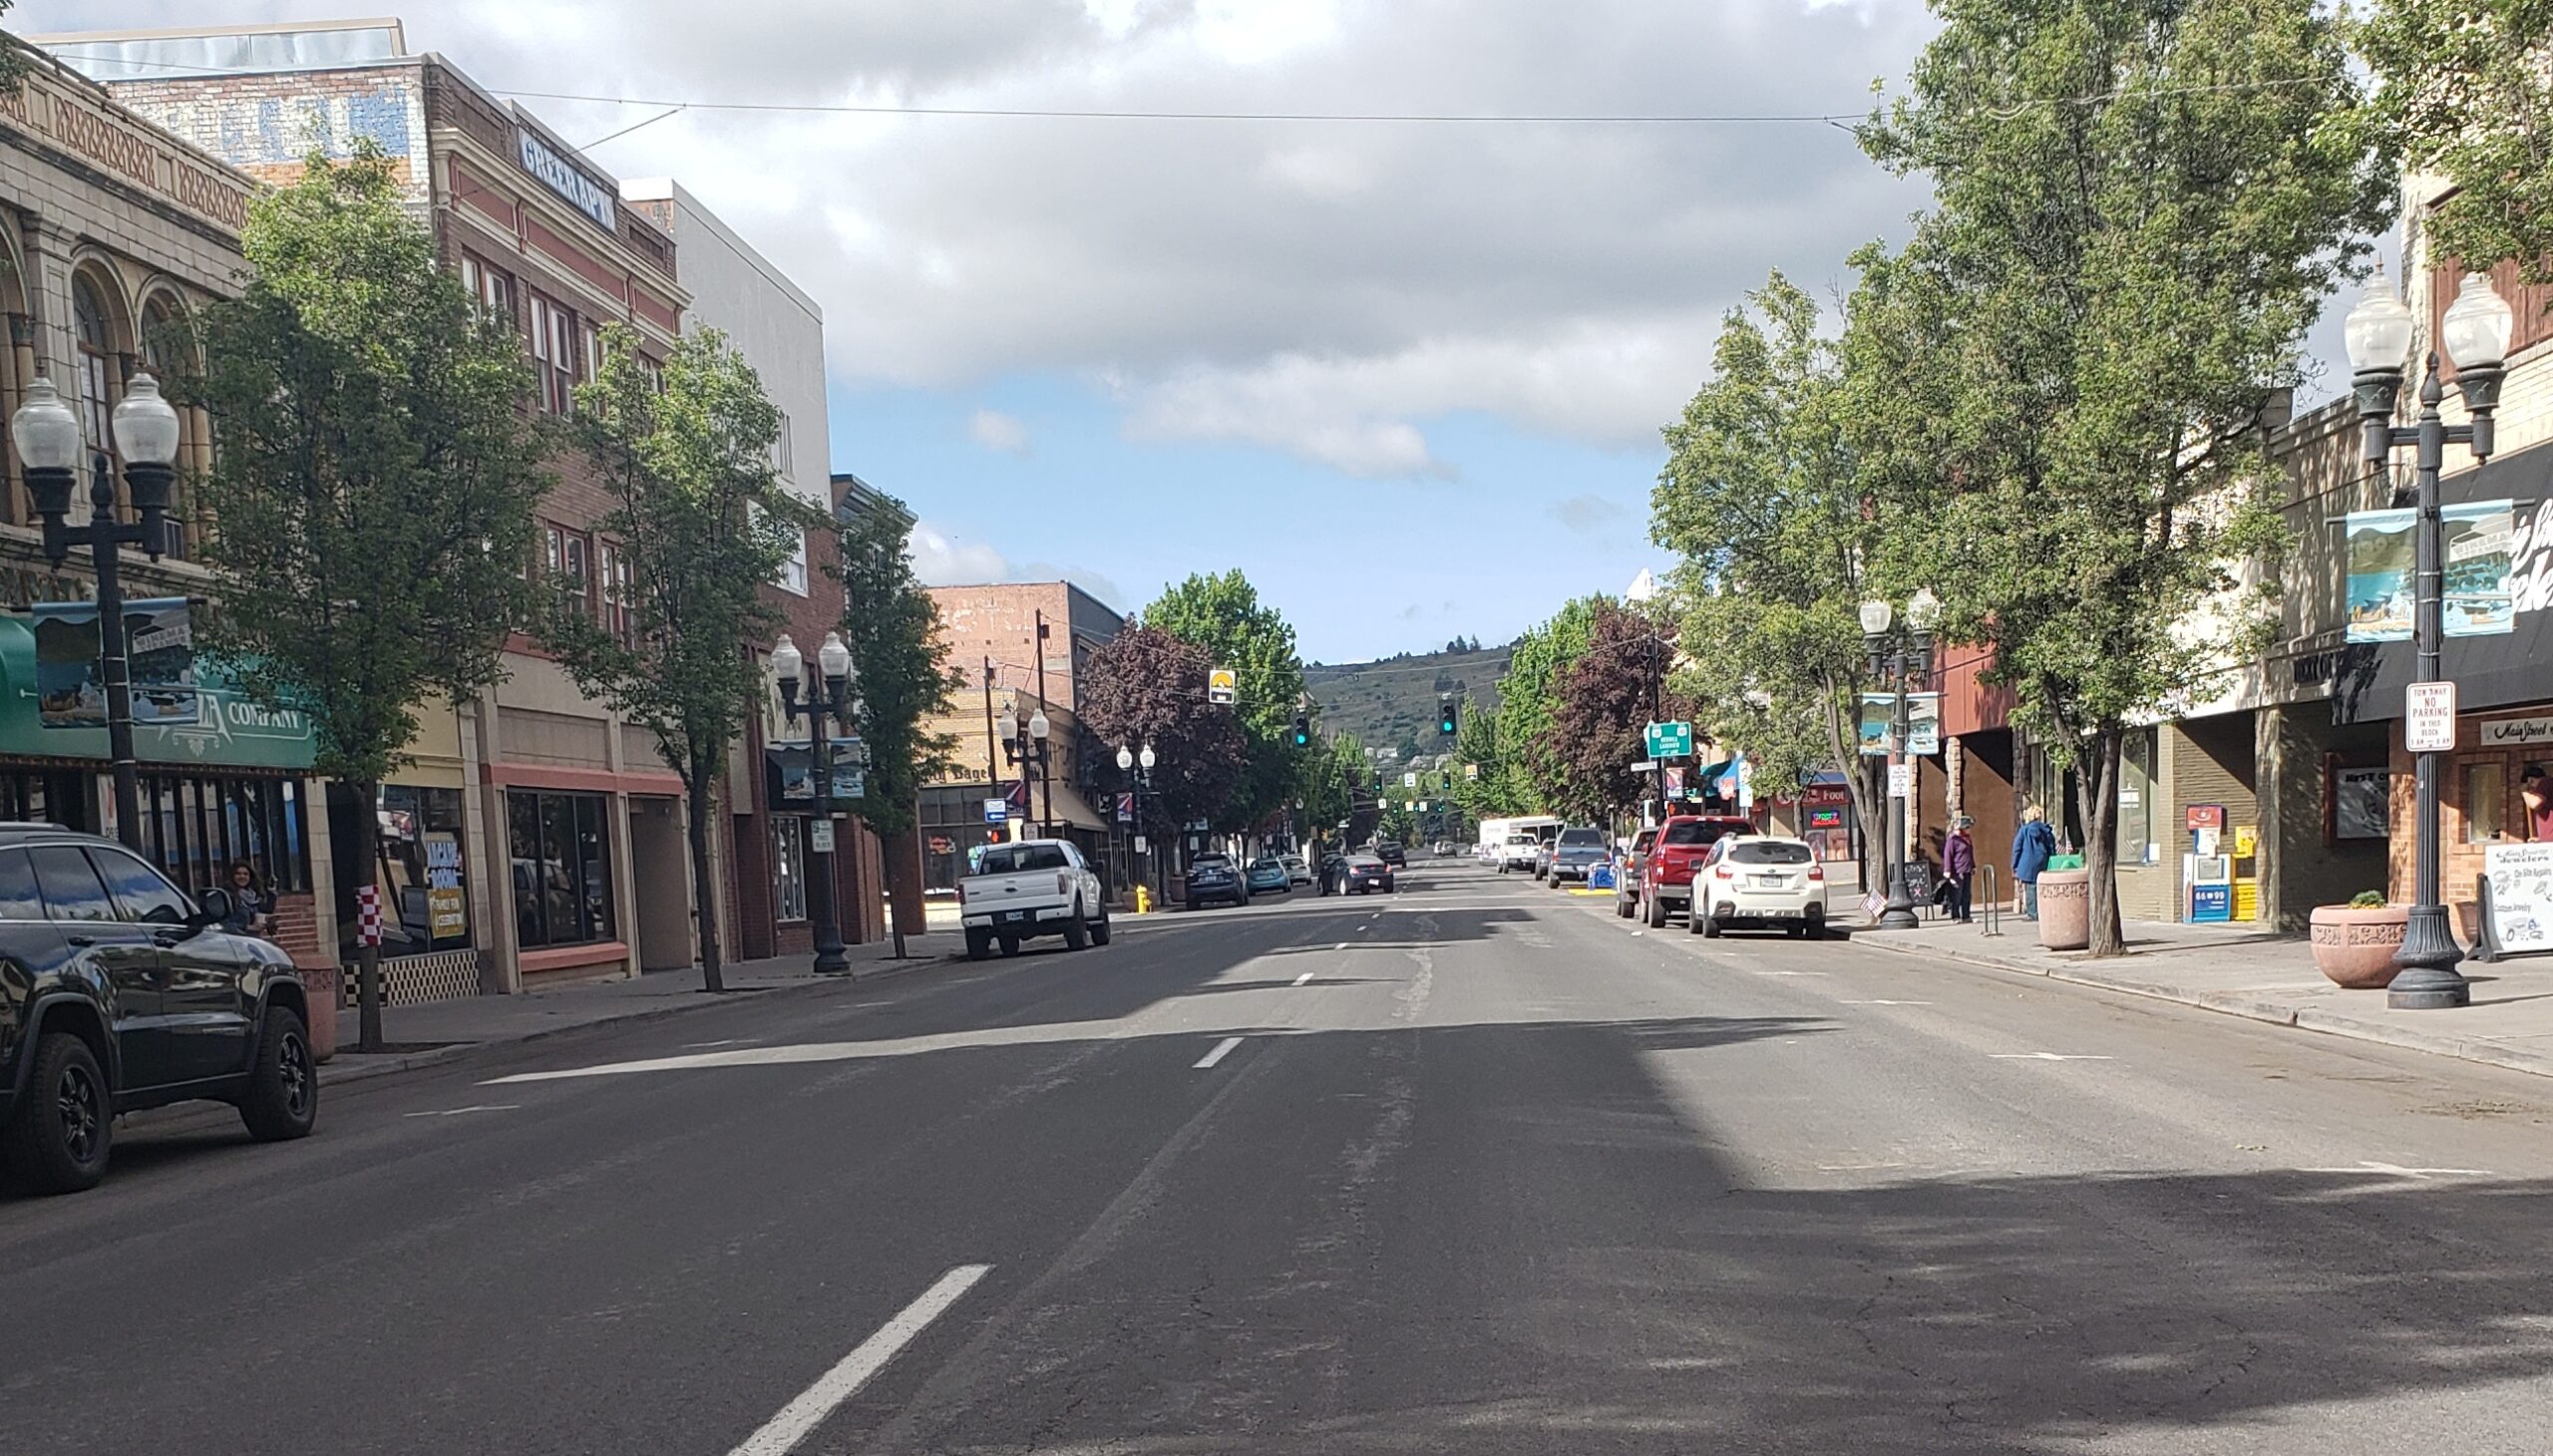 Klamath Basin News, lunes 21 de agosto: la ciudad quiere un aumento en las tarifas y permisos de estacionamiento en el centro; Enormes bustos de crecimiento de marihuana por valor de millones y arrestos realizados, realizados por la Oficina del Sheriff del condado de Klamath